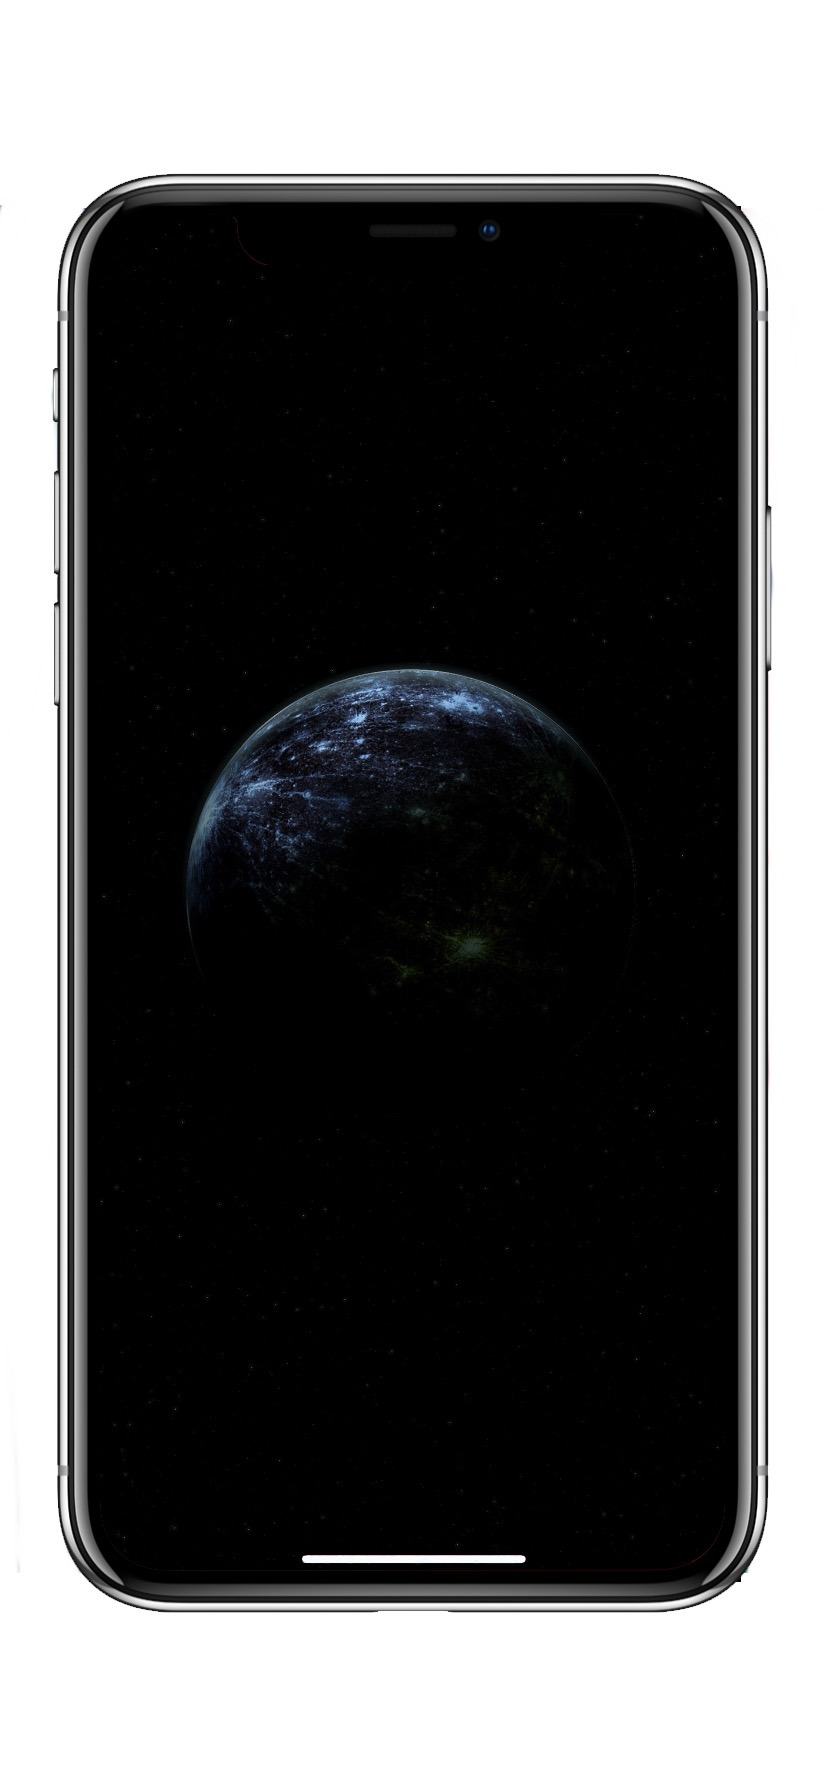 Обои iPhone планета